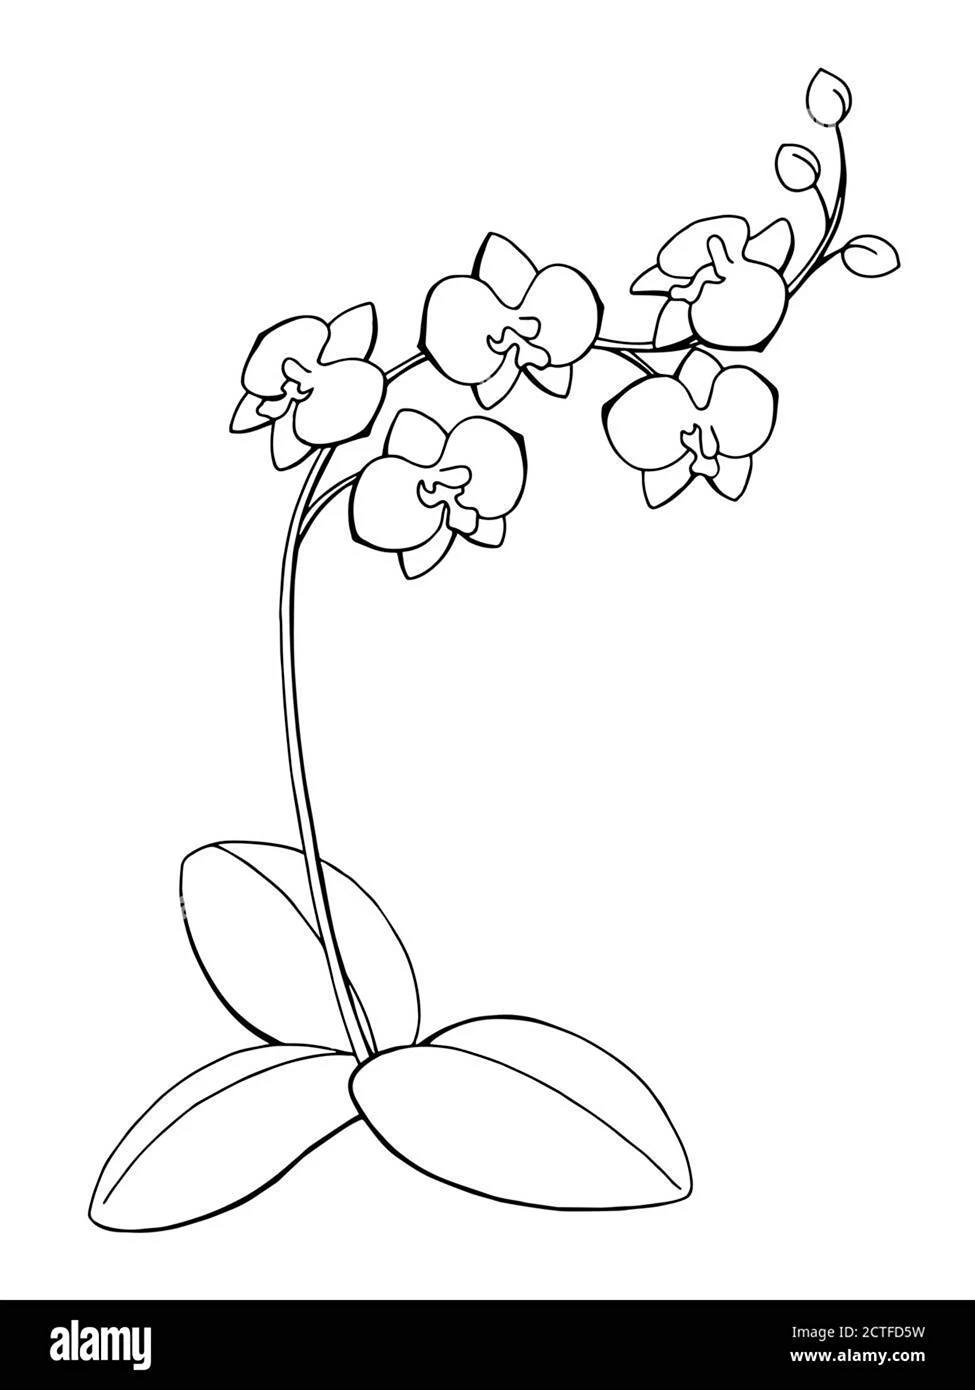 Нарисовать орхидею легко